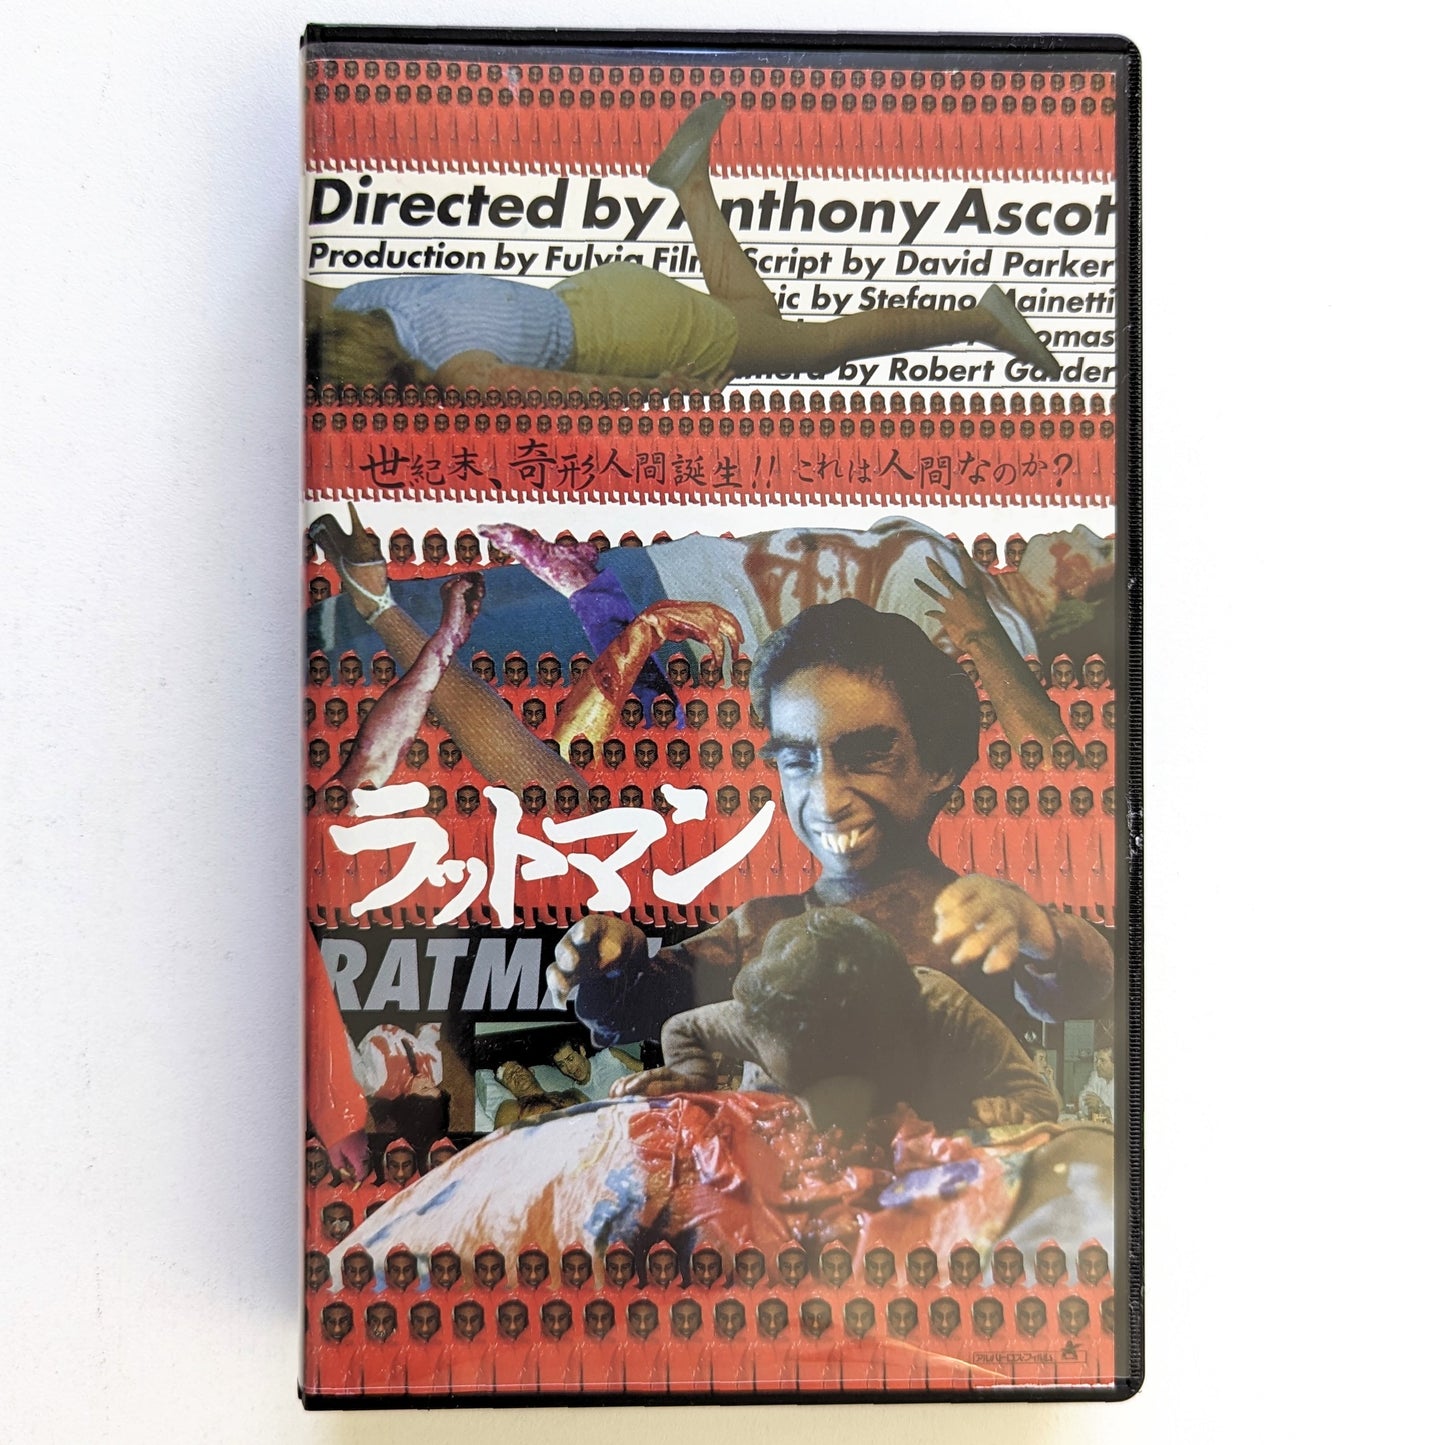 Ratman (1988) Japanese VHS